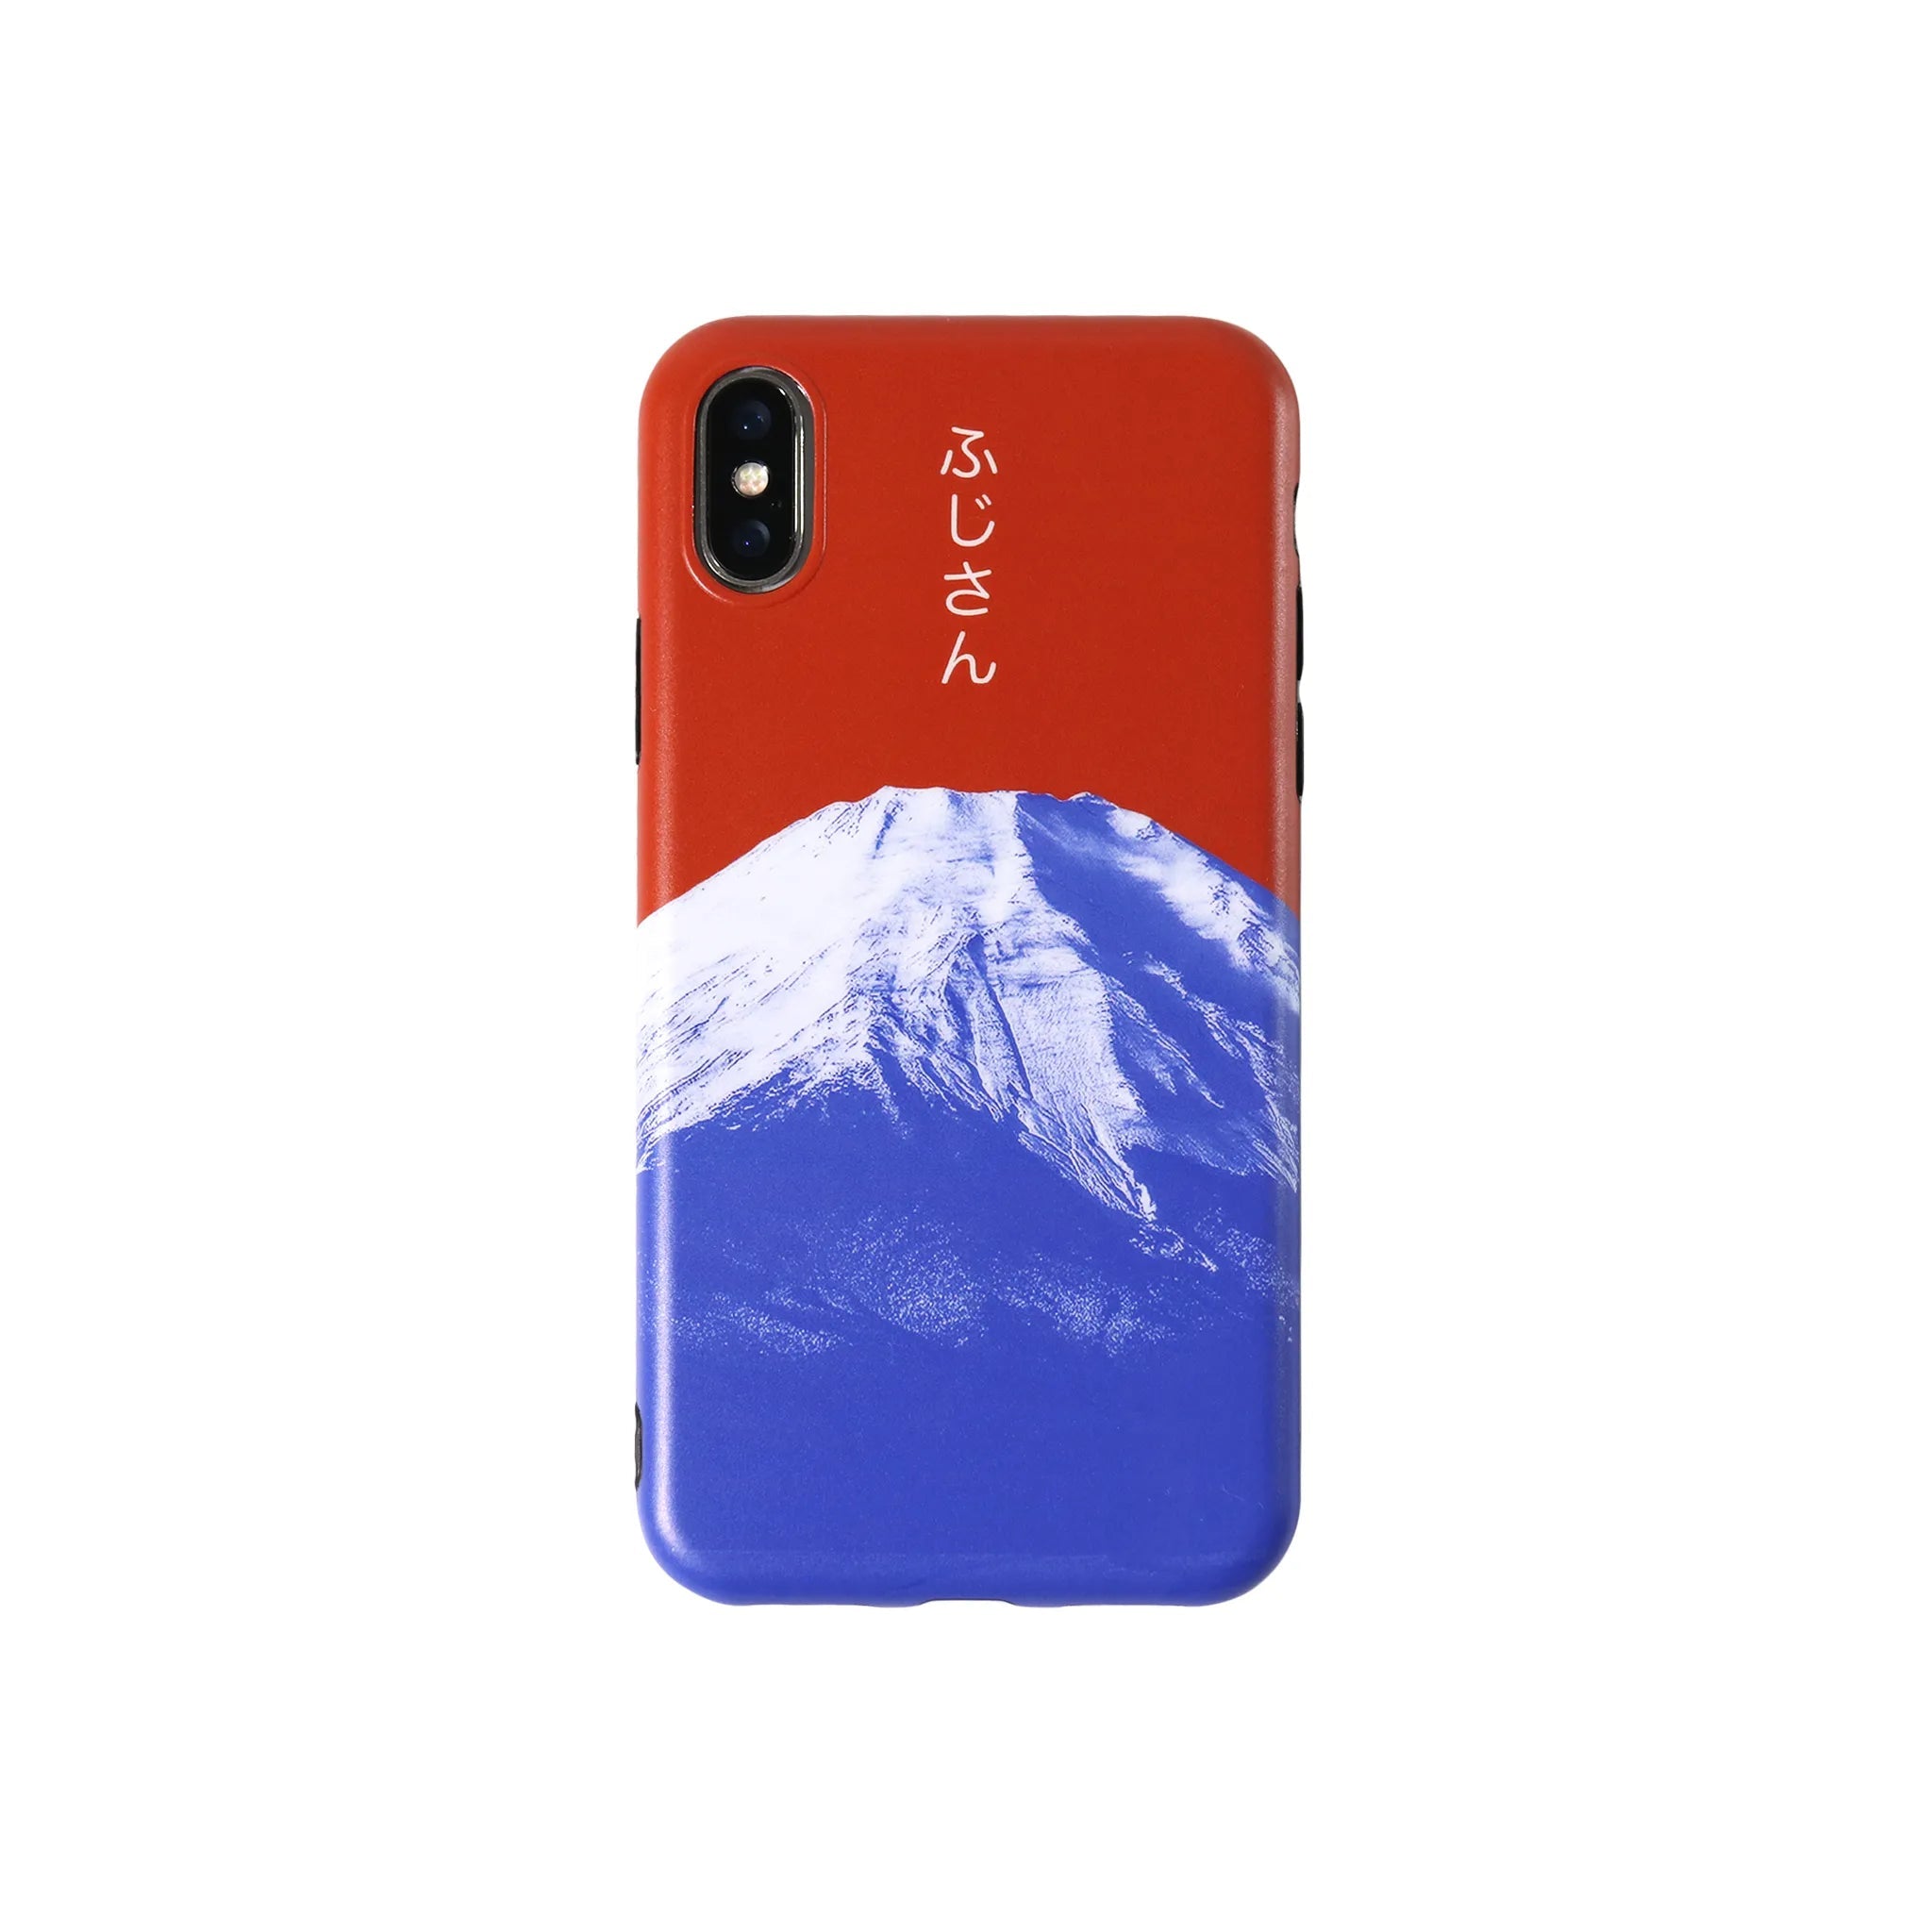 cas:pace 19A/W 「富士山」携帯ケース - cas:pace 殼空間